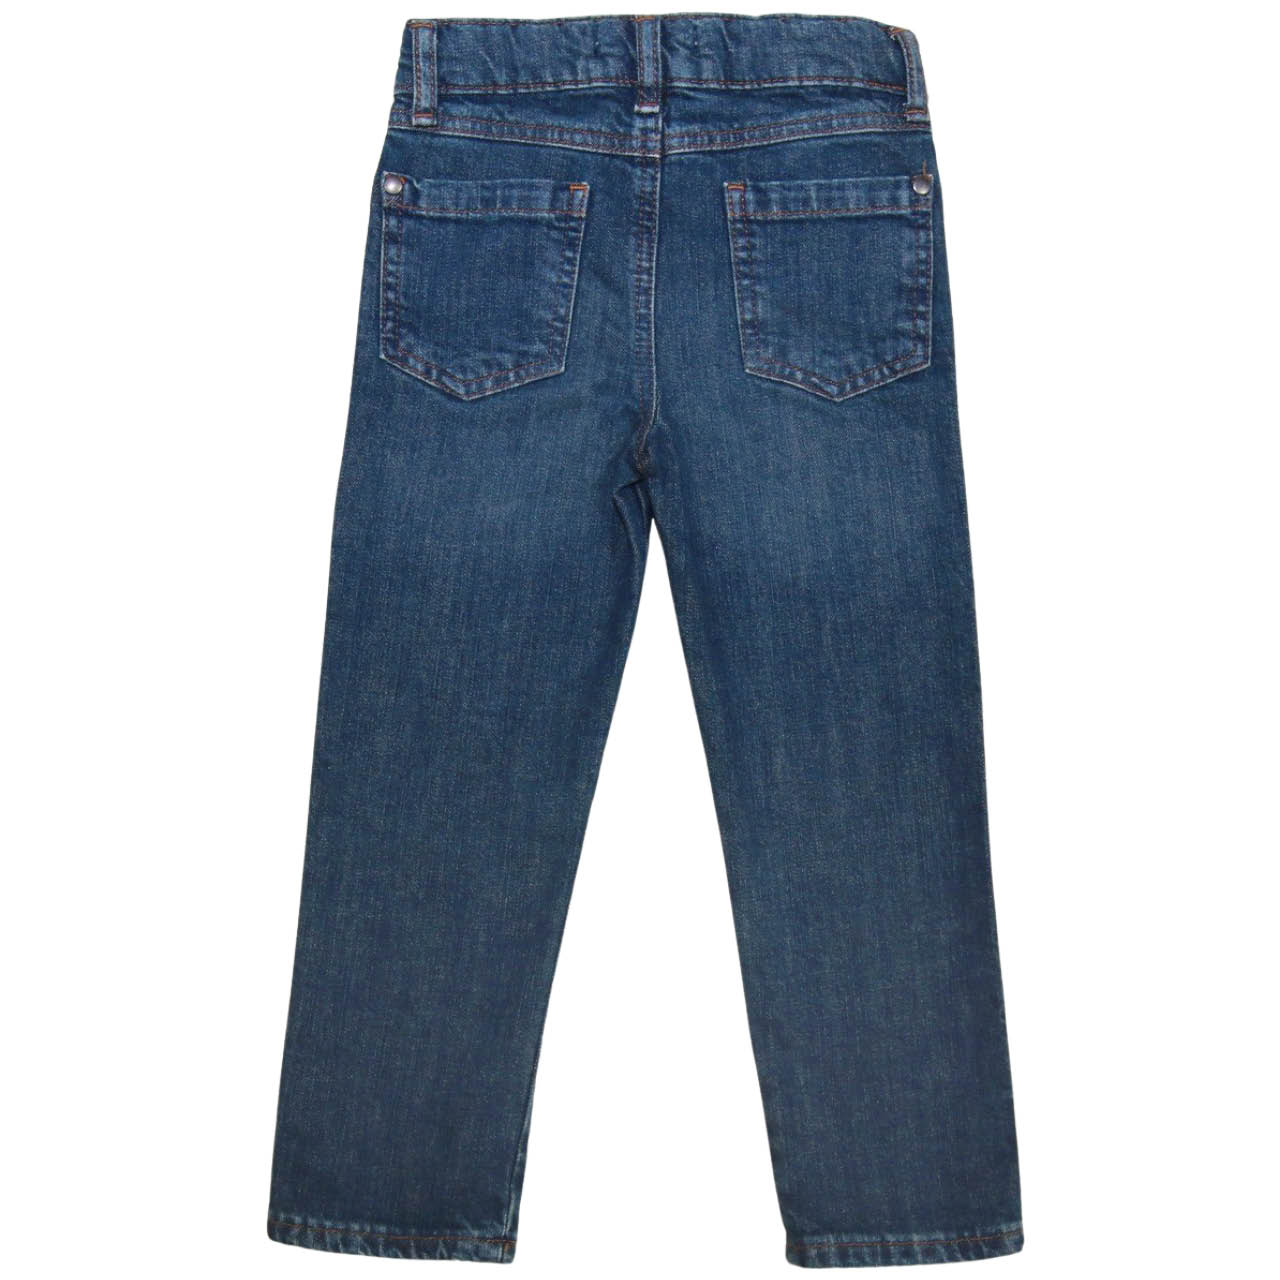 Bequeme Jeans mitwachsend medium blau